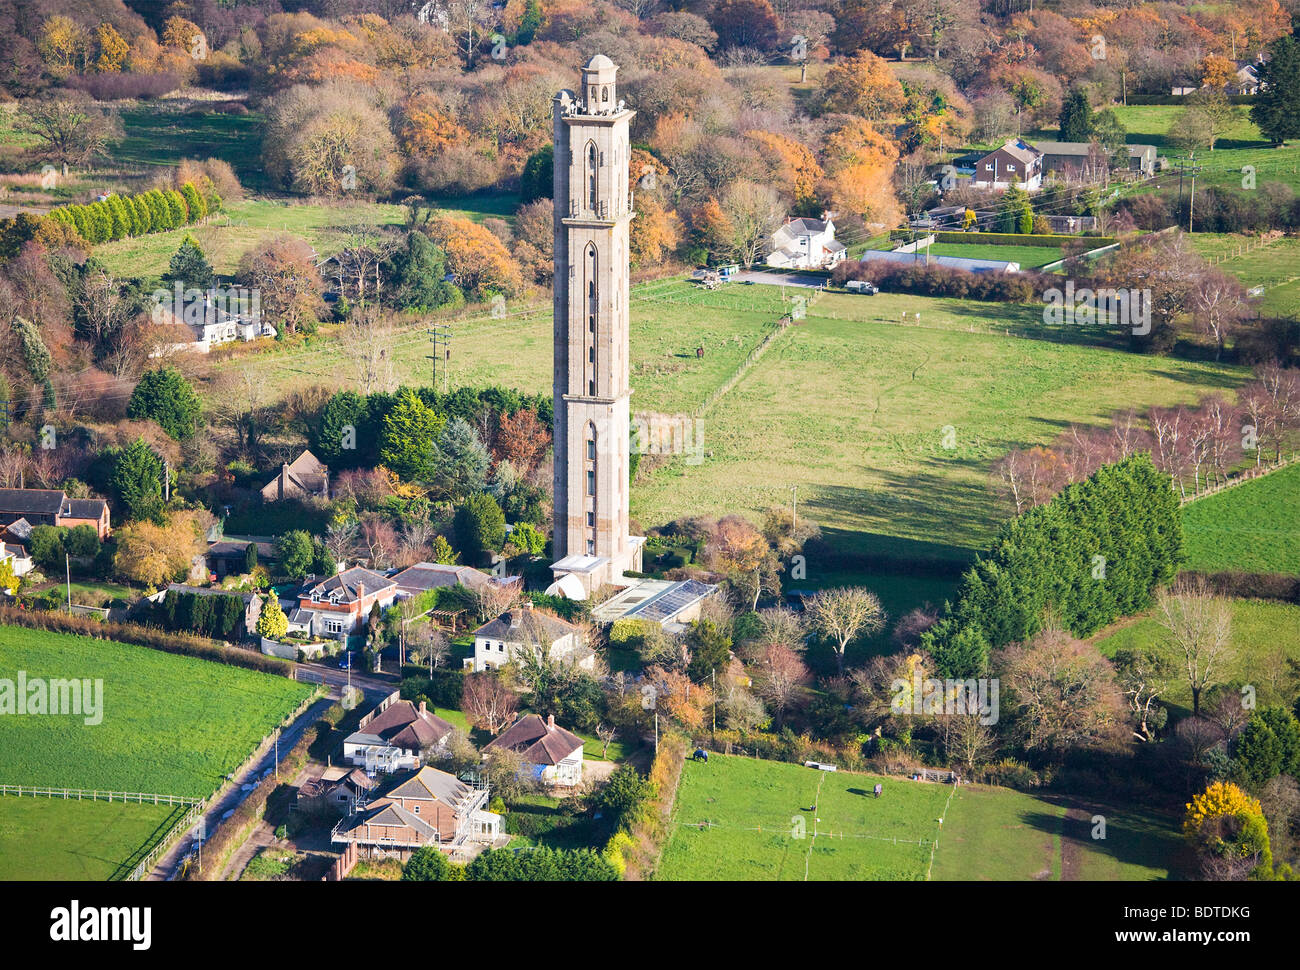 Vue aérienne de la tour de la folie de débattement, également connu sous le nom de Peterson's Folly. Sway, Hampshire. UK. De l'automne. Banque D'Images